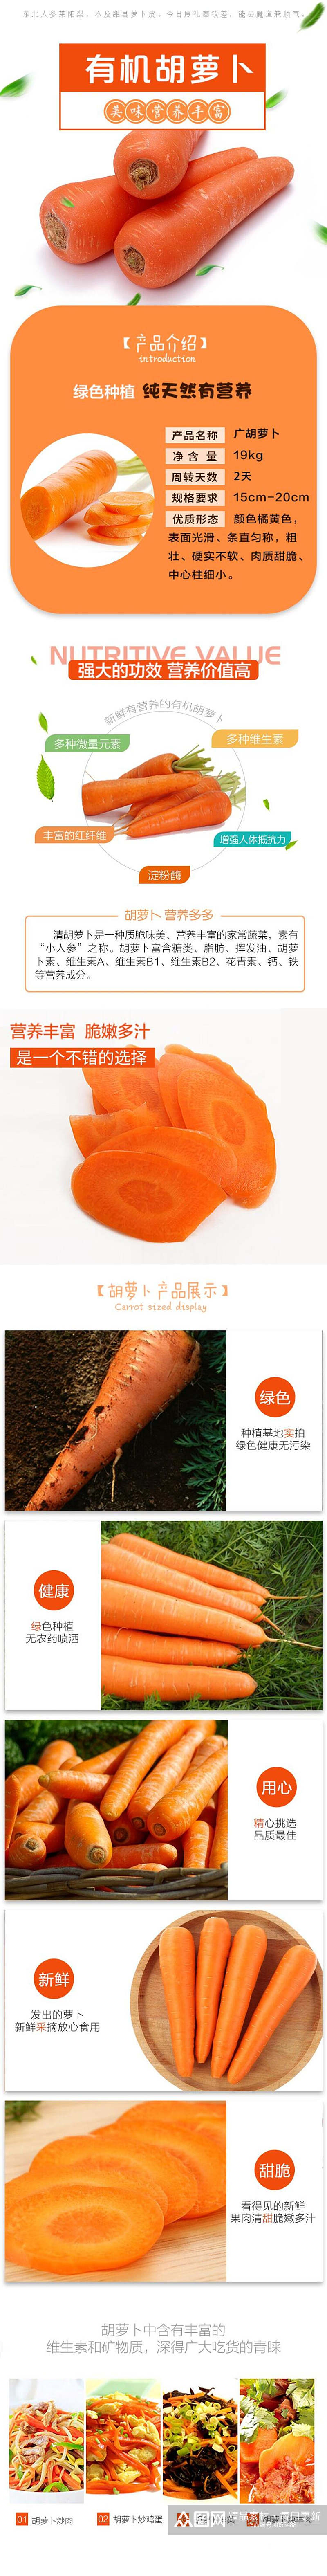 有机胡萝卜蔬菜手机版详情页素材